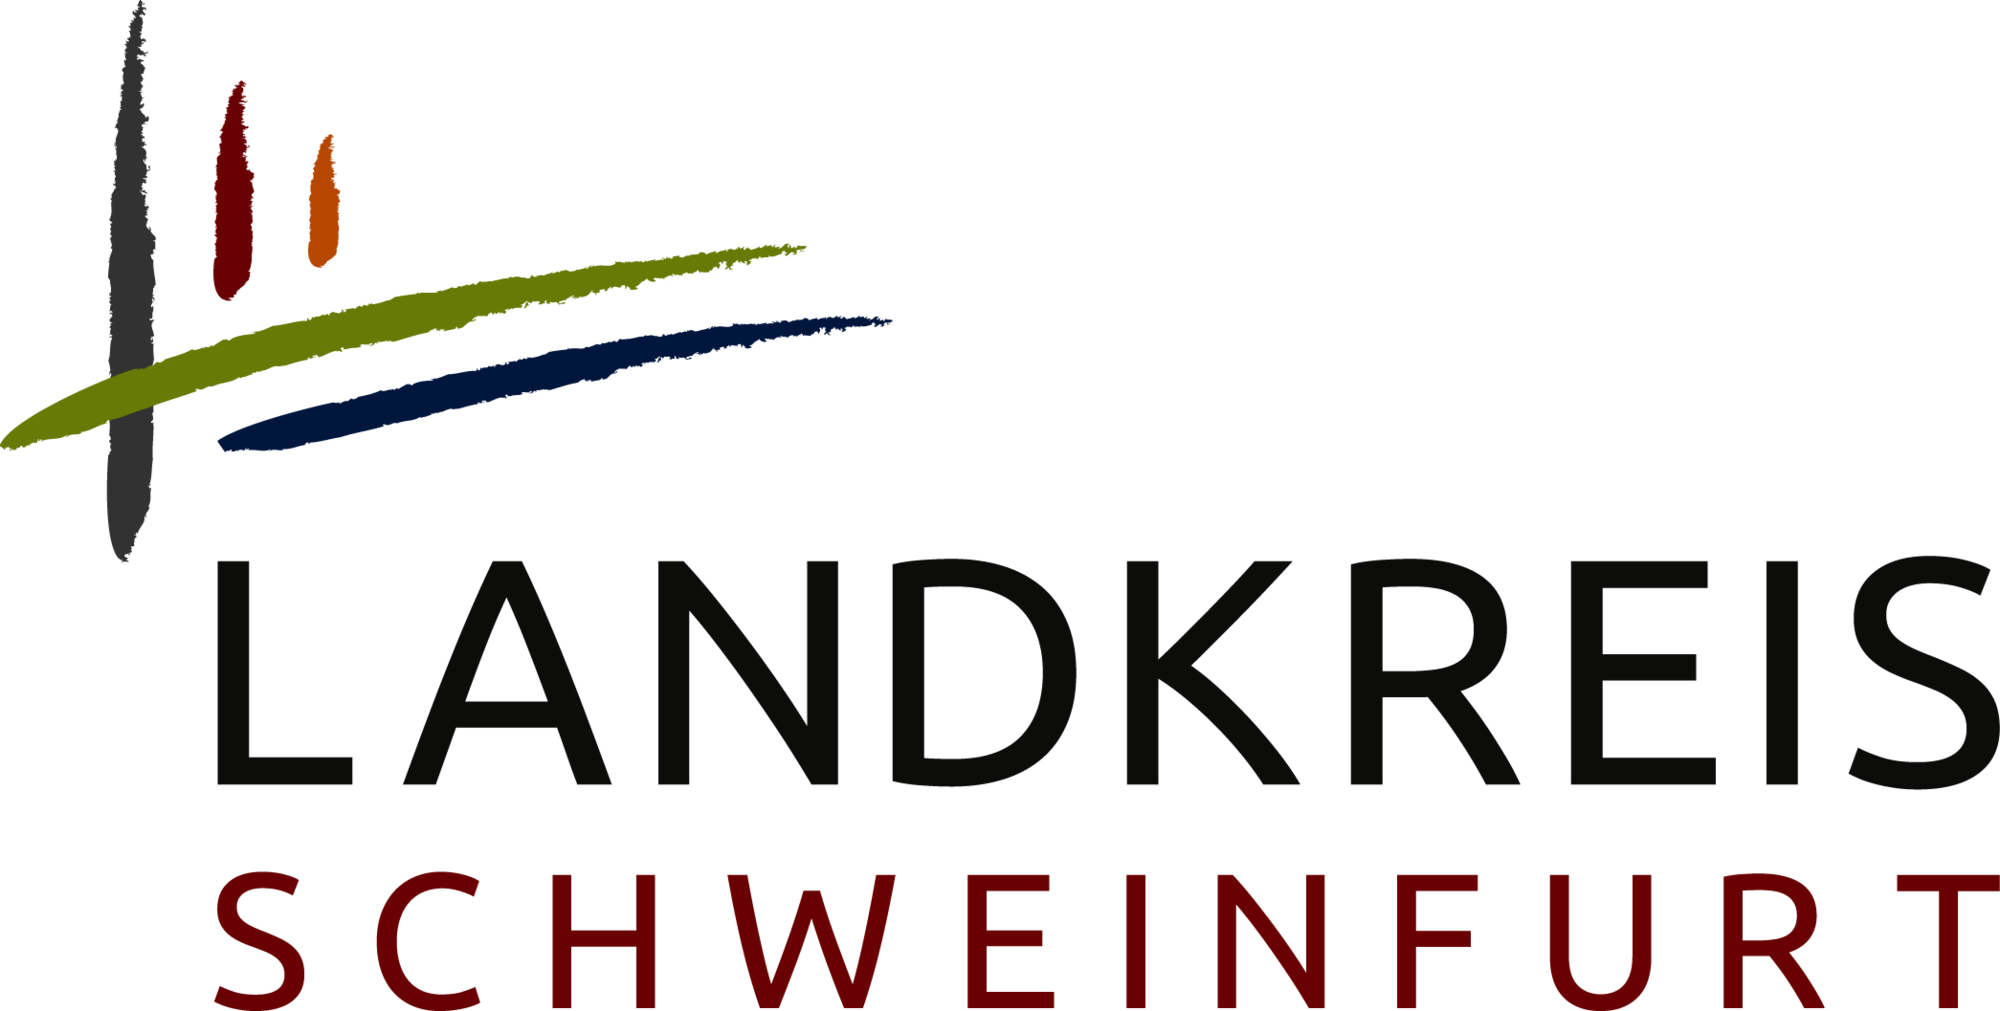 Logo Landkreis Schweinfurt